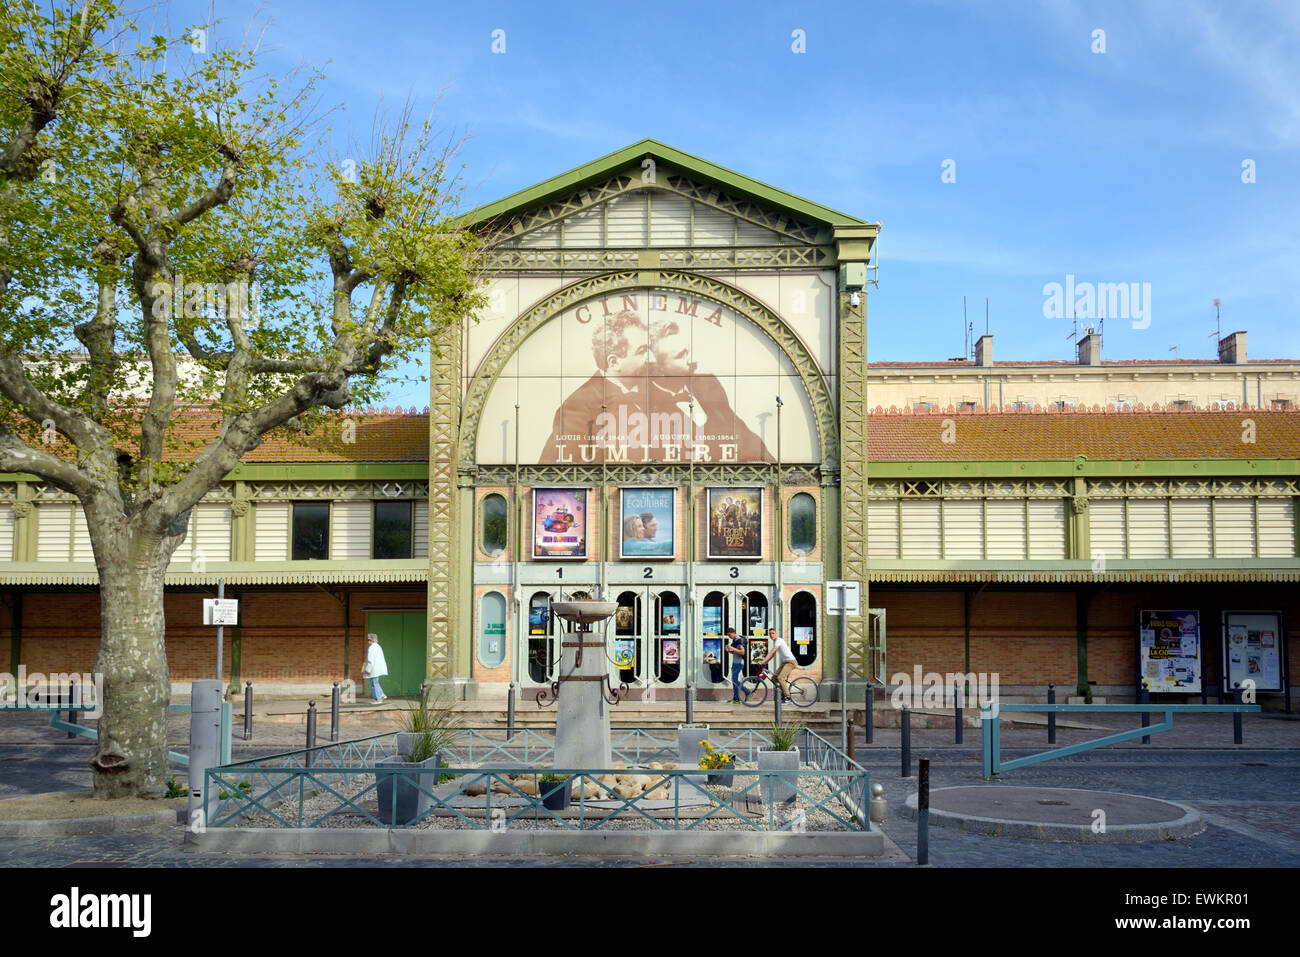 Cinéma Lumière, dans un ancien bâtiment du marché ou convertis, peint avec une image des Frères Lumières ou frères Mulière, La Ciotat Provence France Banque D'Images